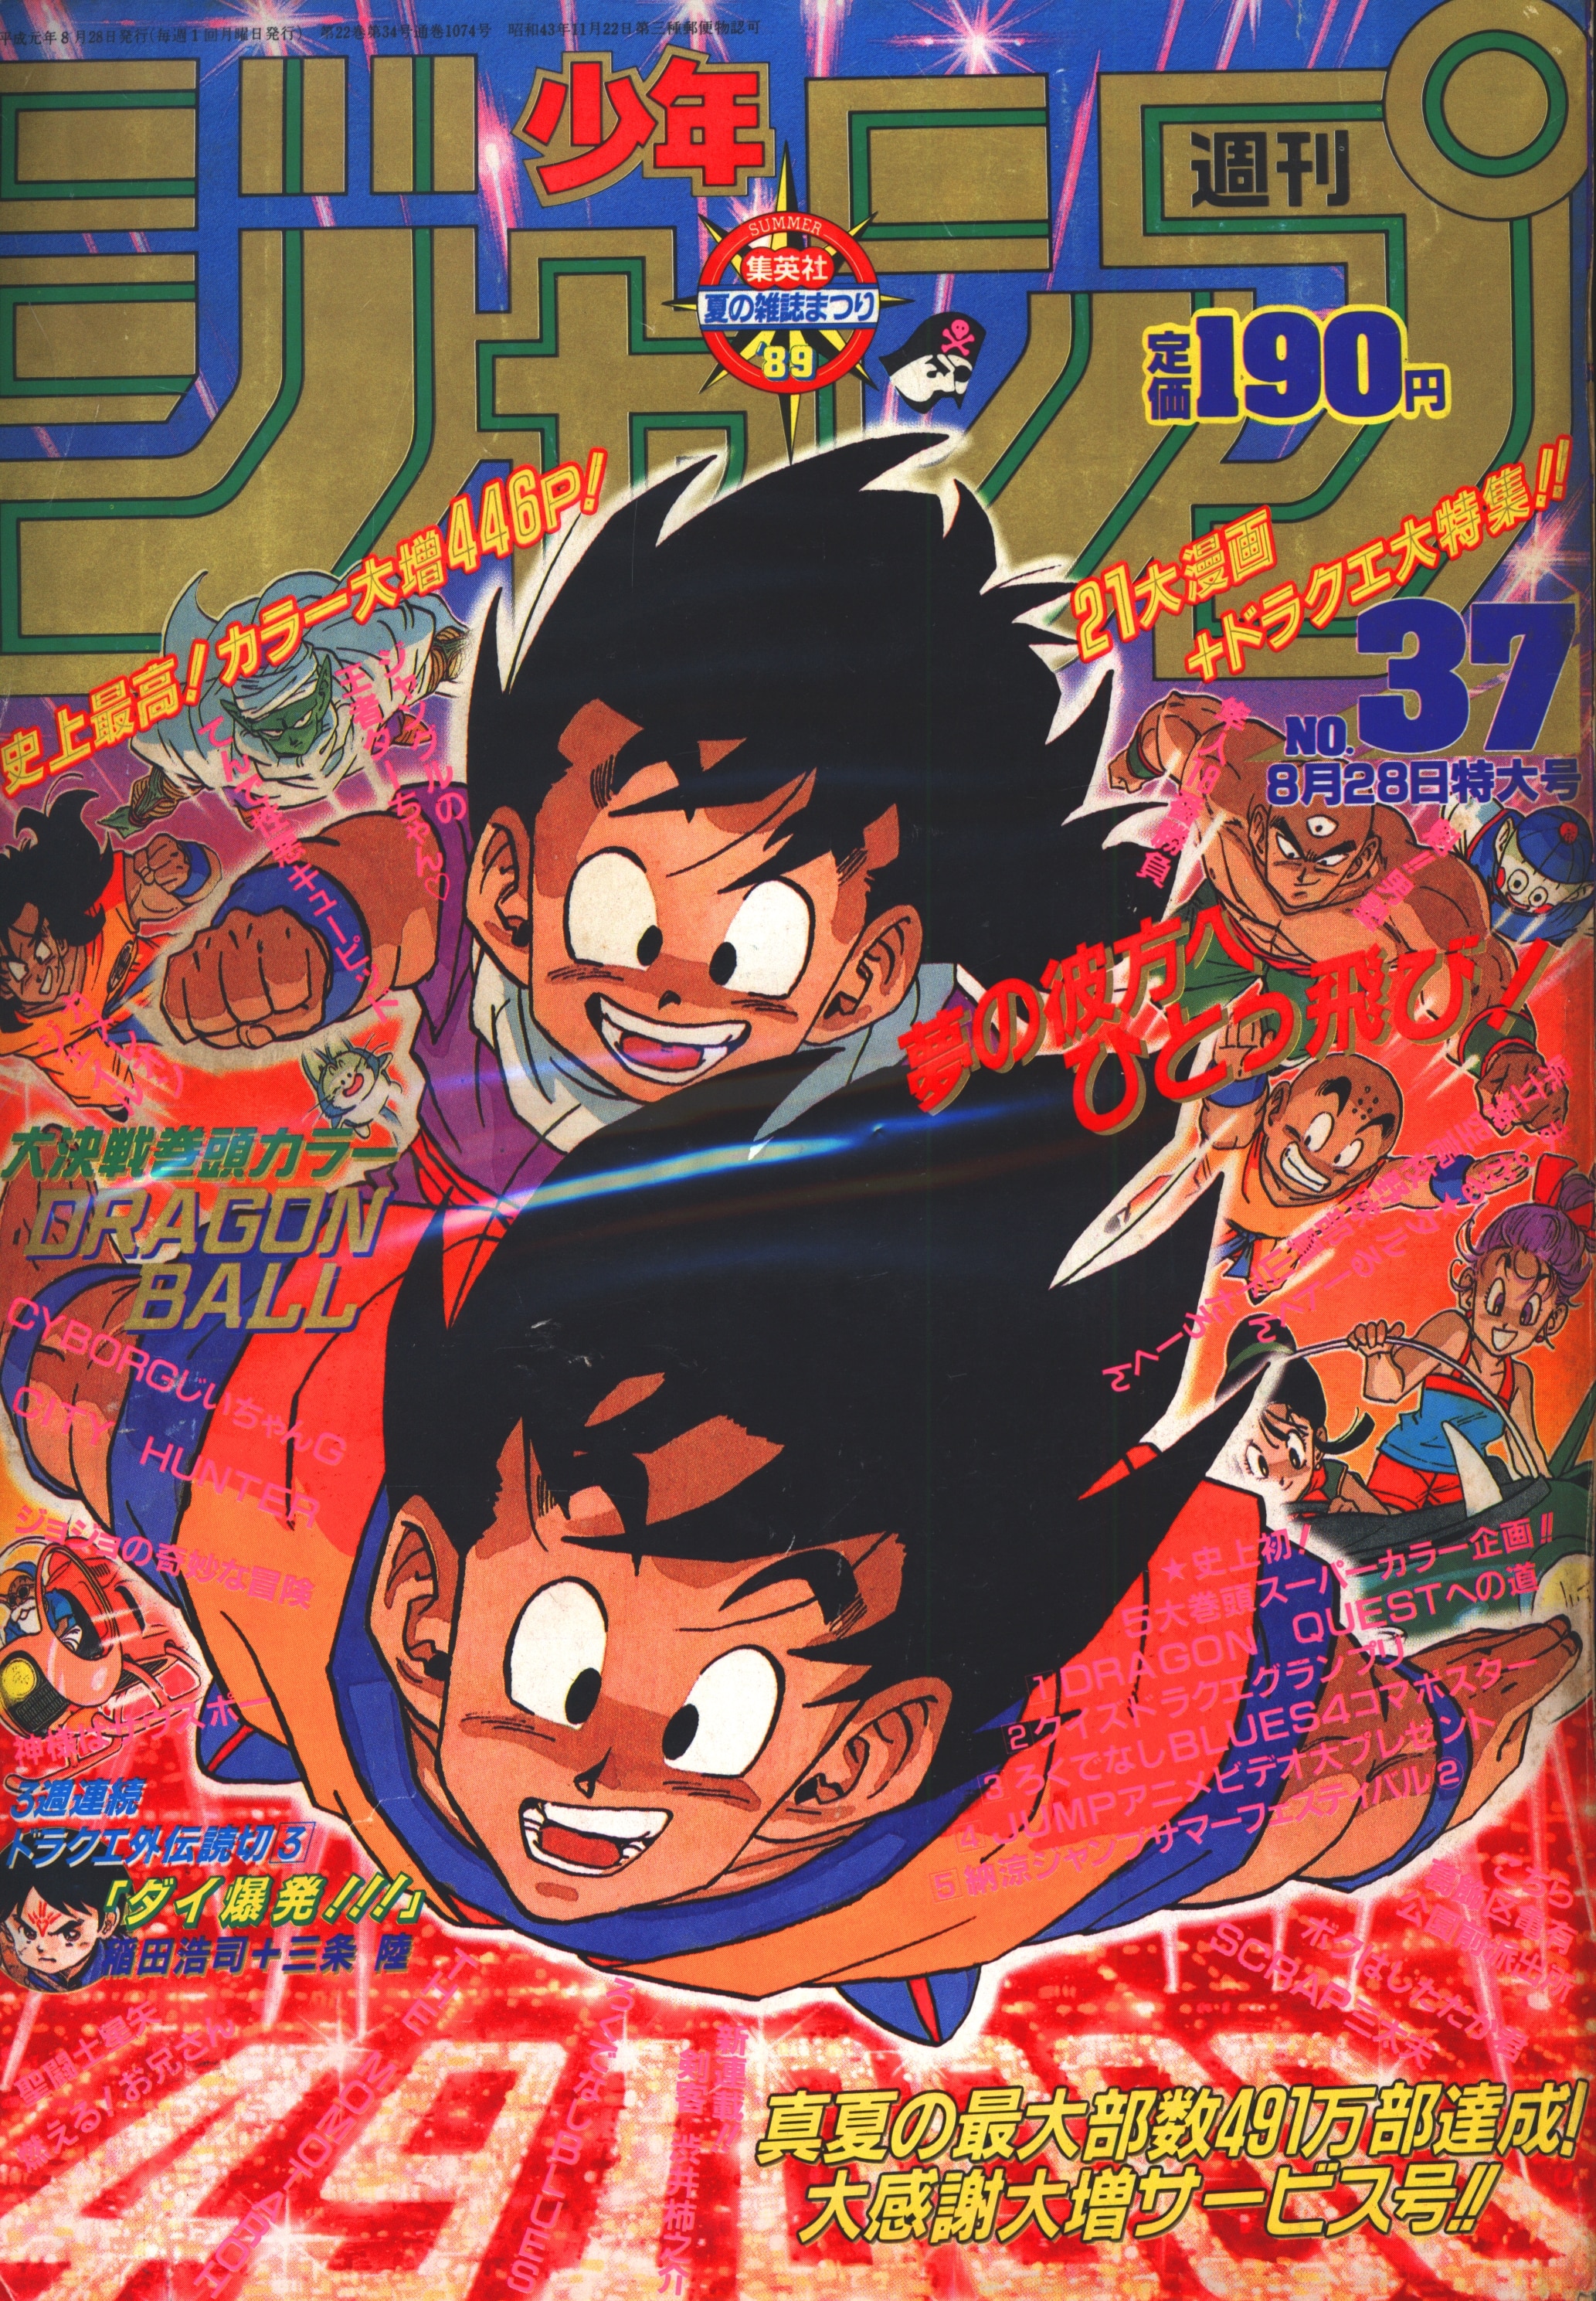 集英社 1989年(平成1年)の漫画雑誌 週刊少年ジャンプ 1989年(平成1年 